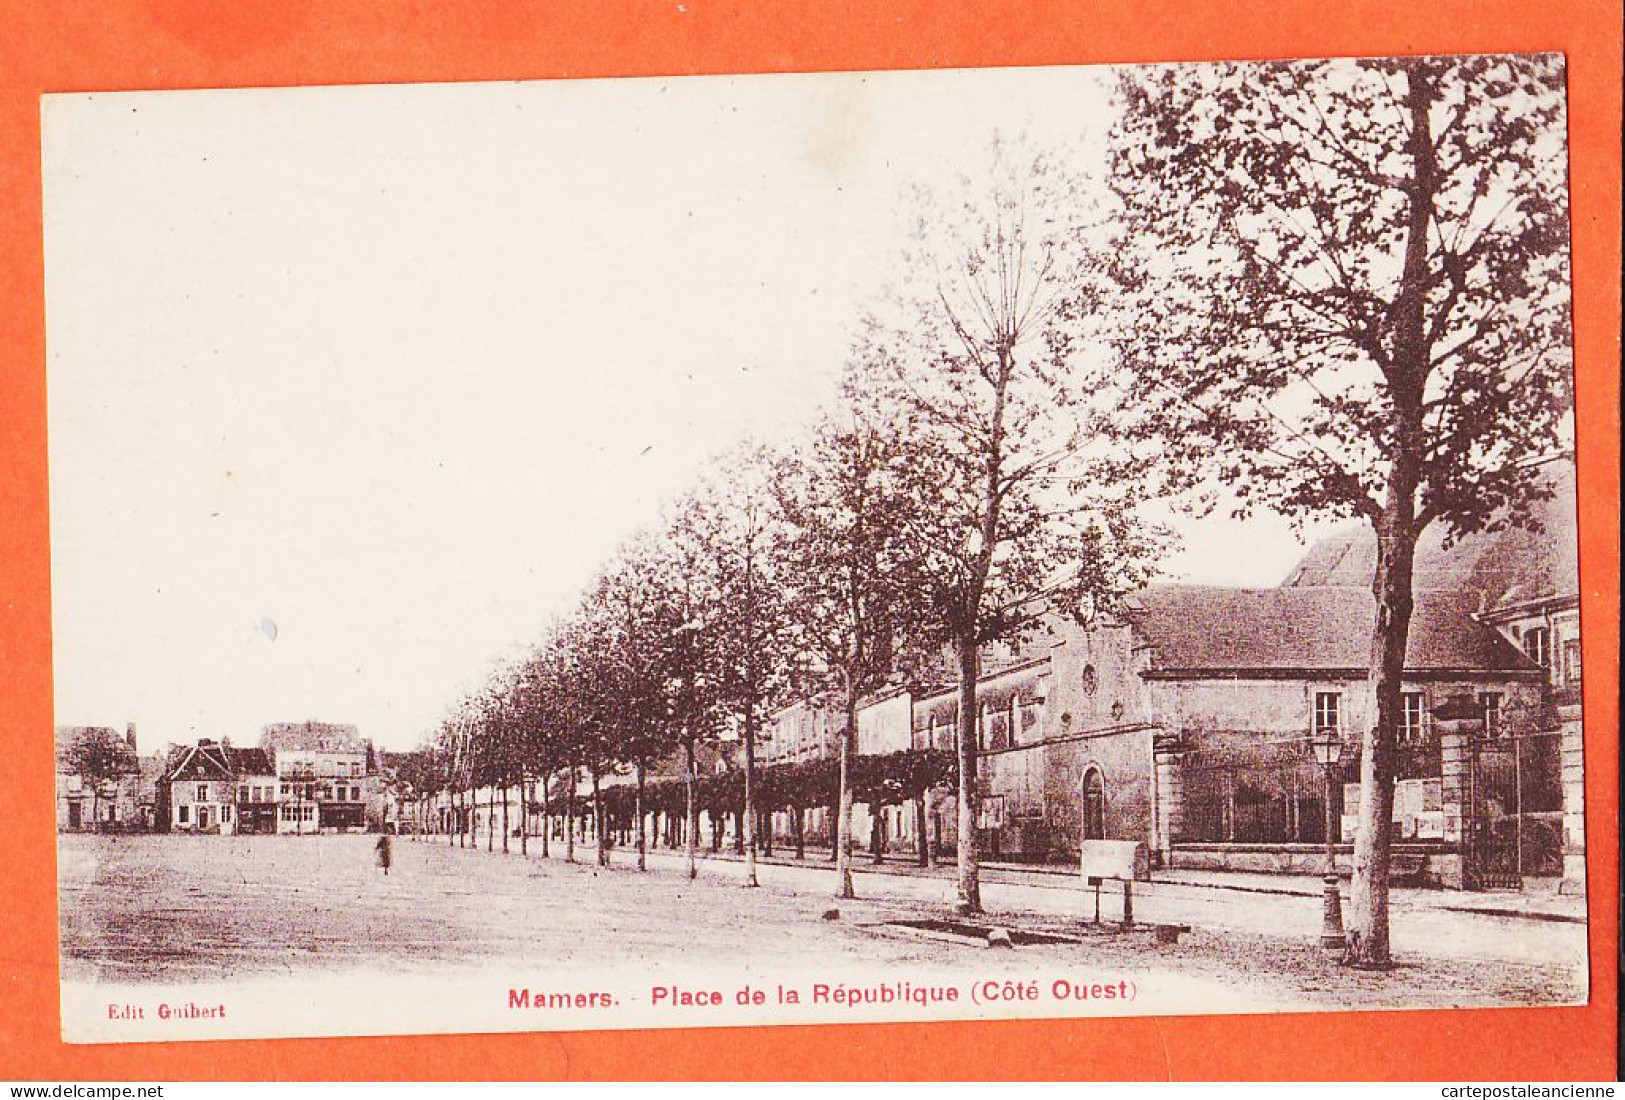 35279 / MAMERS 72-Sarthe Place REPUBLIQUE Coté Ouest 1910s Edition GUIBERT - Mamers